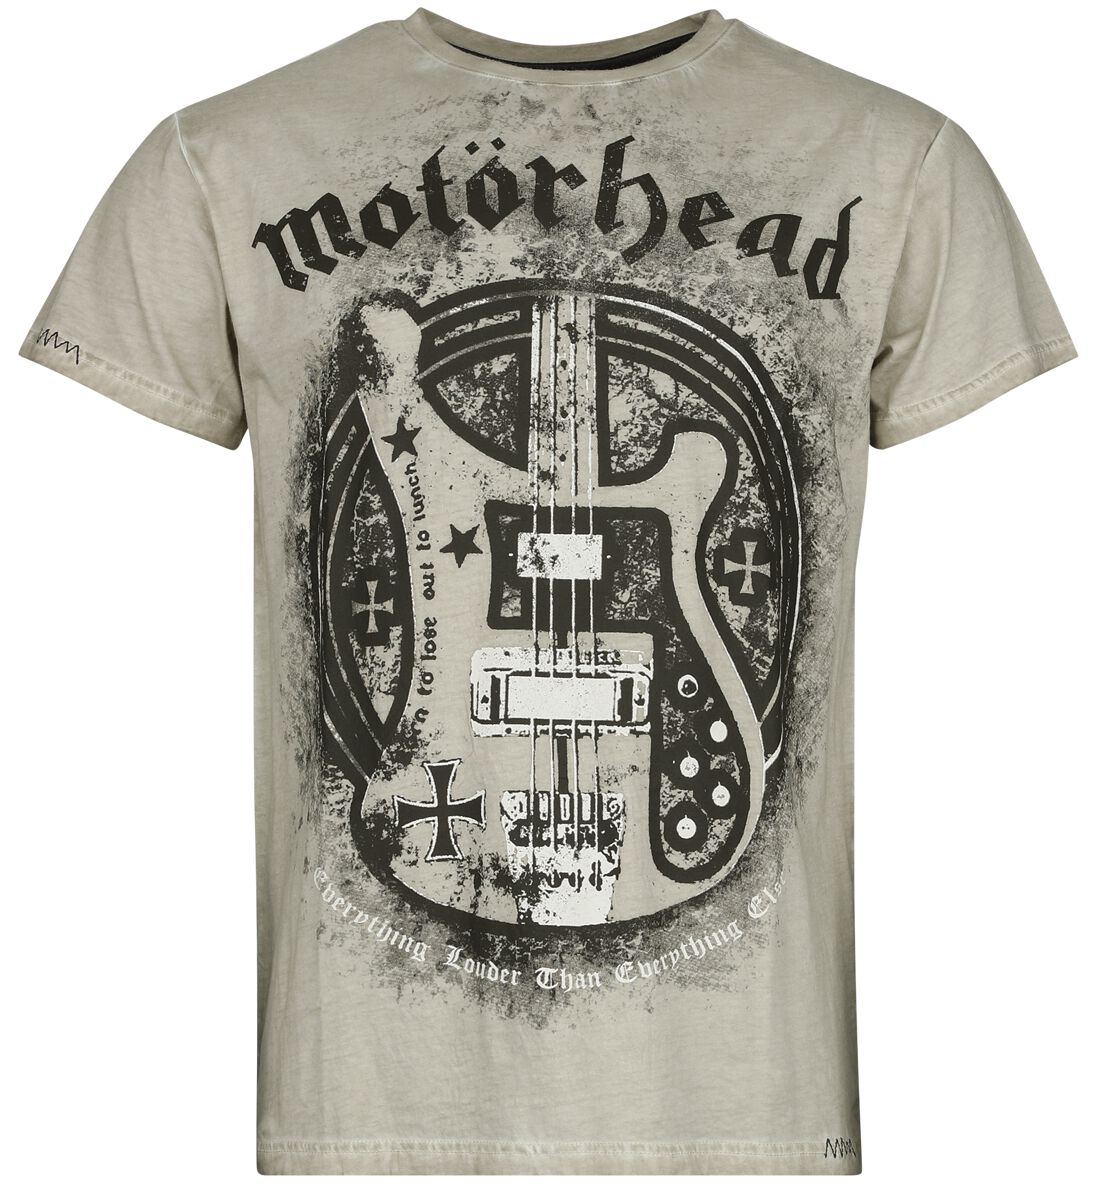 Motörhead T-Shirt - EMP Signature Collection - M - für Männer - Größe M - khaki  - EMP exklusives Merchandise!